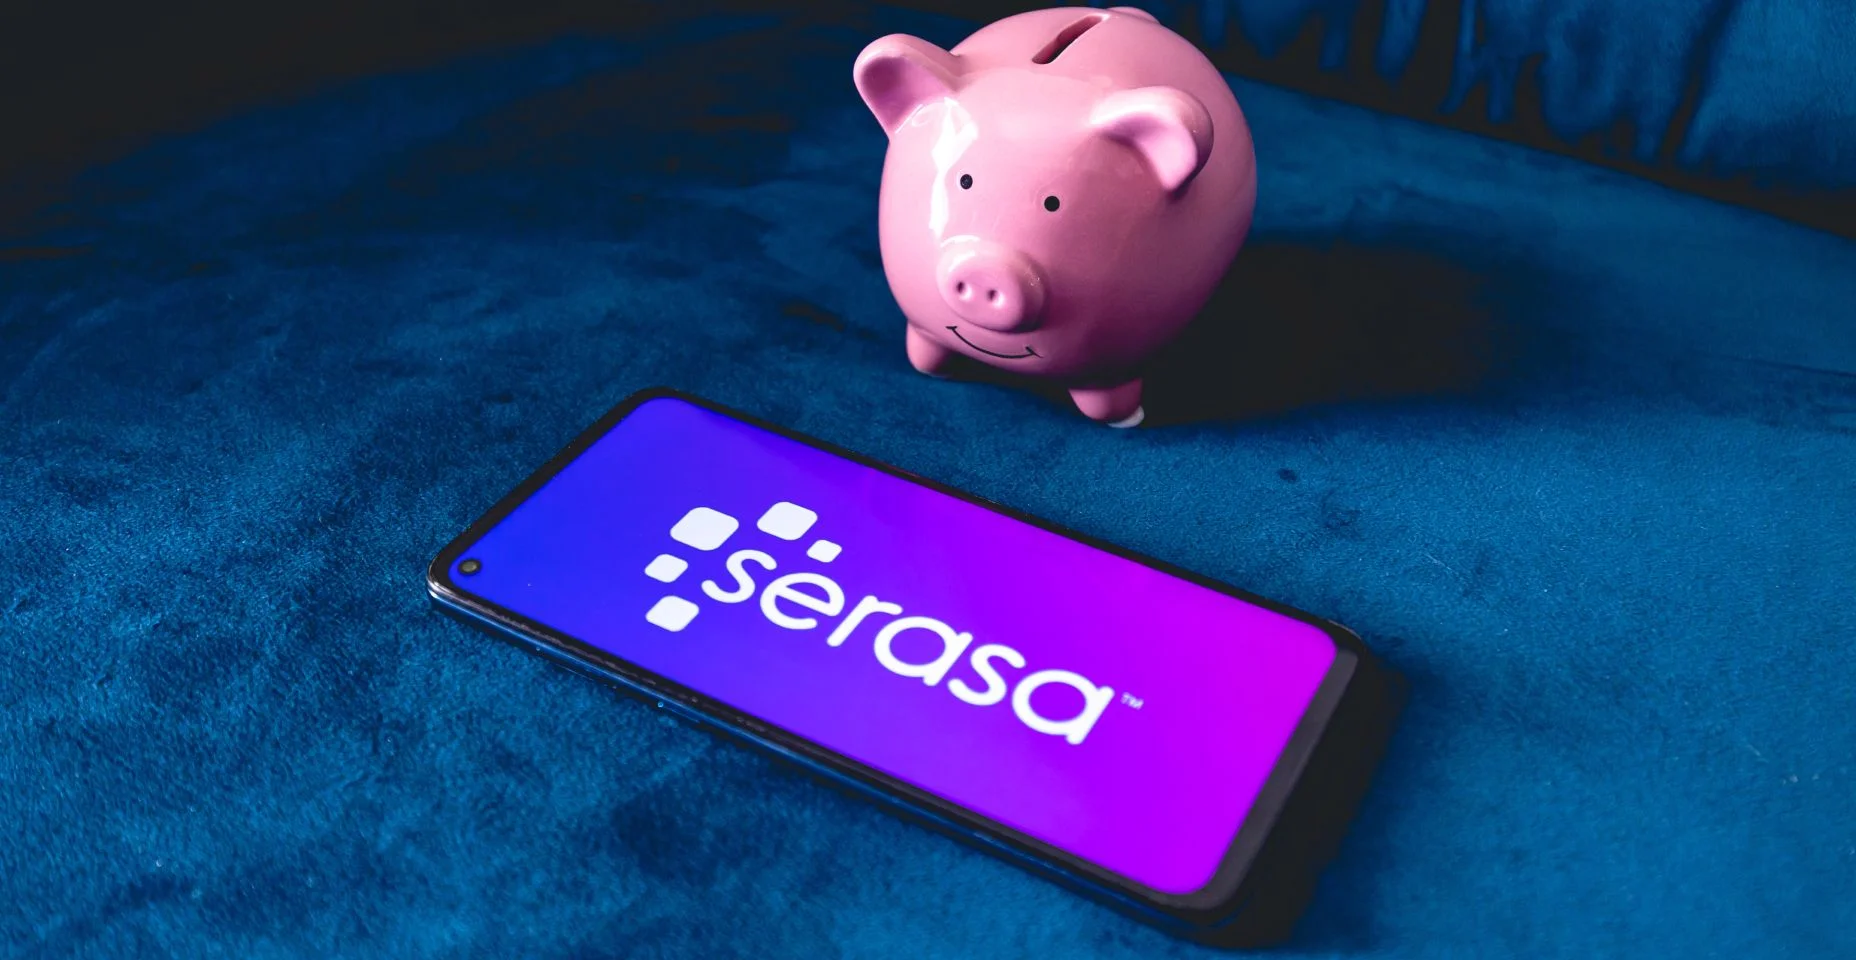 Um telefone celular com a logo da empresa brasileira Serasa e um cofrinho sobre um sofá azul.